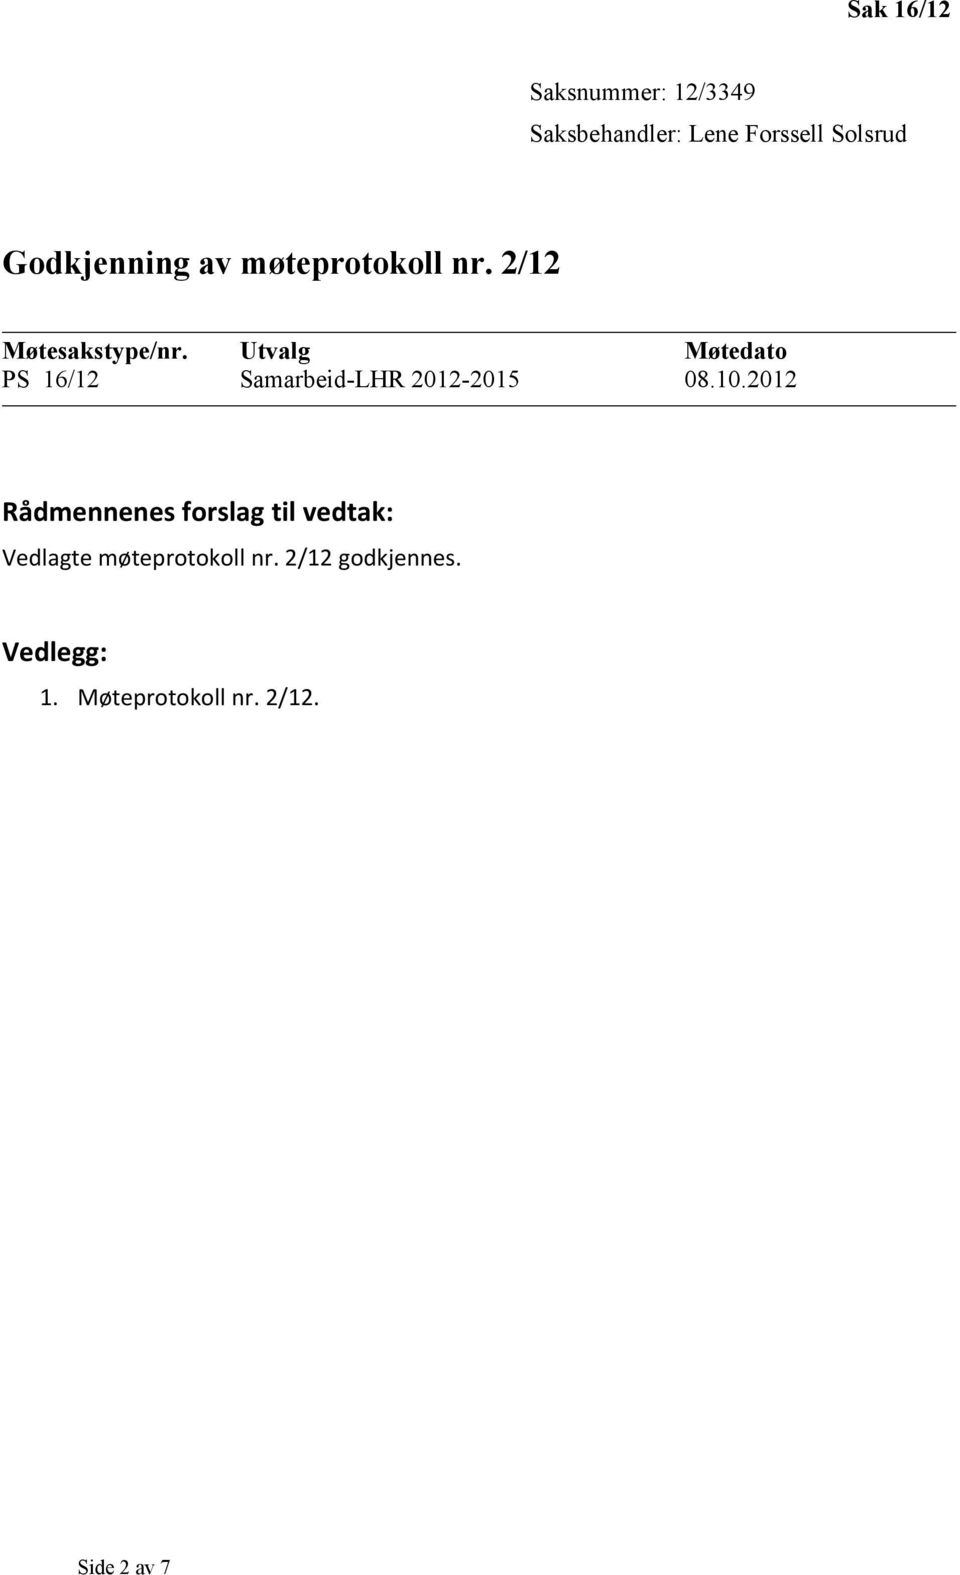 Utvalg Møtedat PS 16/12 Samarbeid-LHR 2012-2015 08.10.